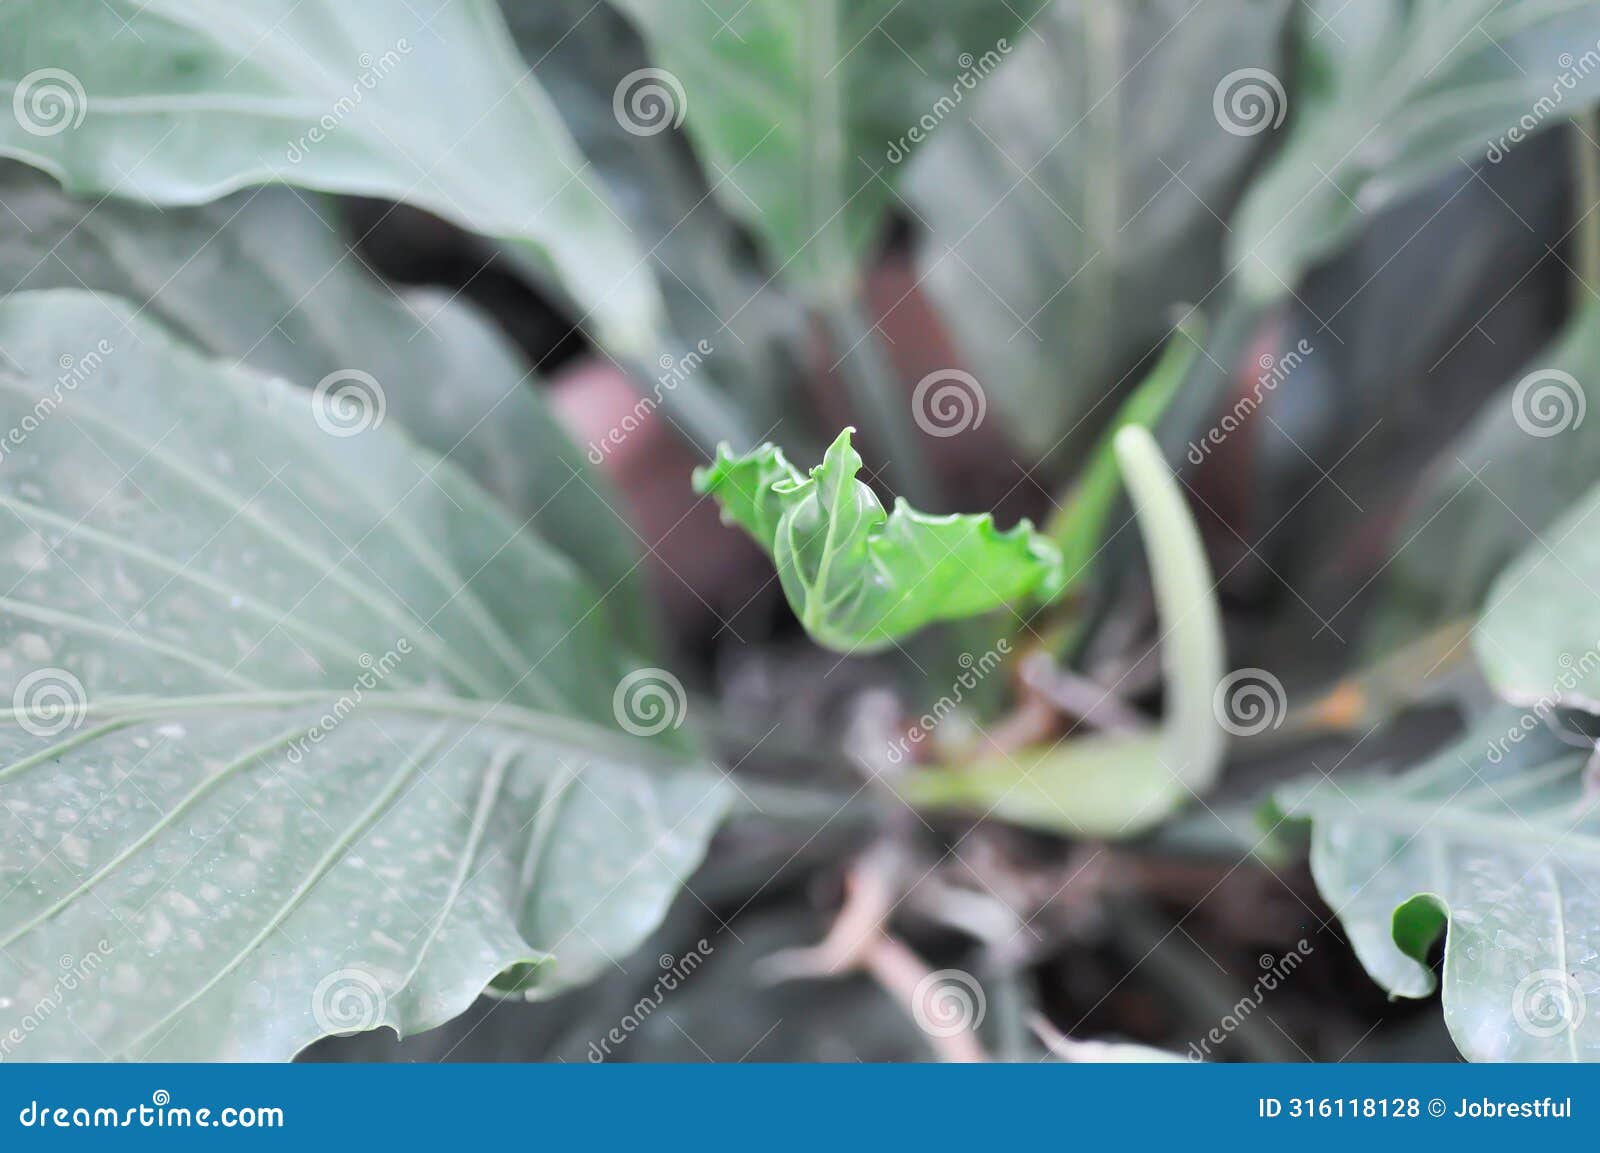 anthurium plowmanii croat or araceae